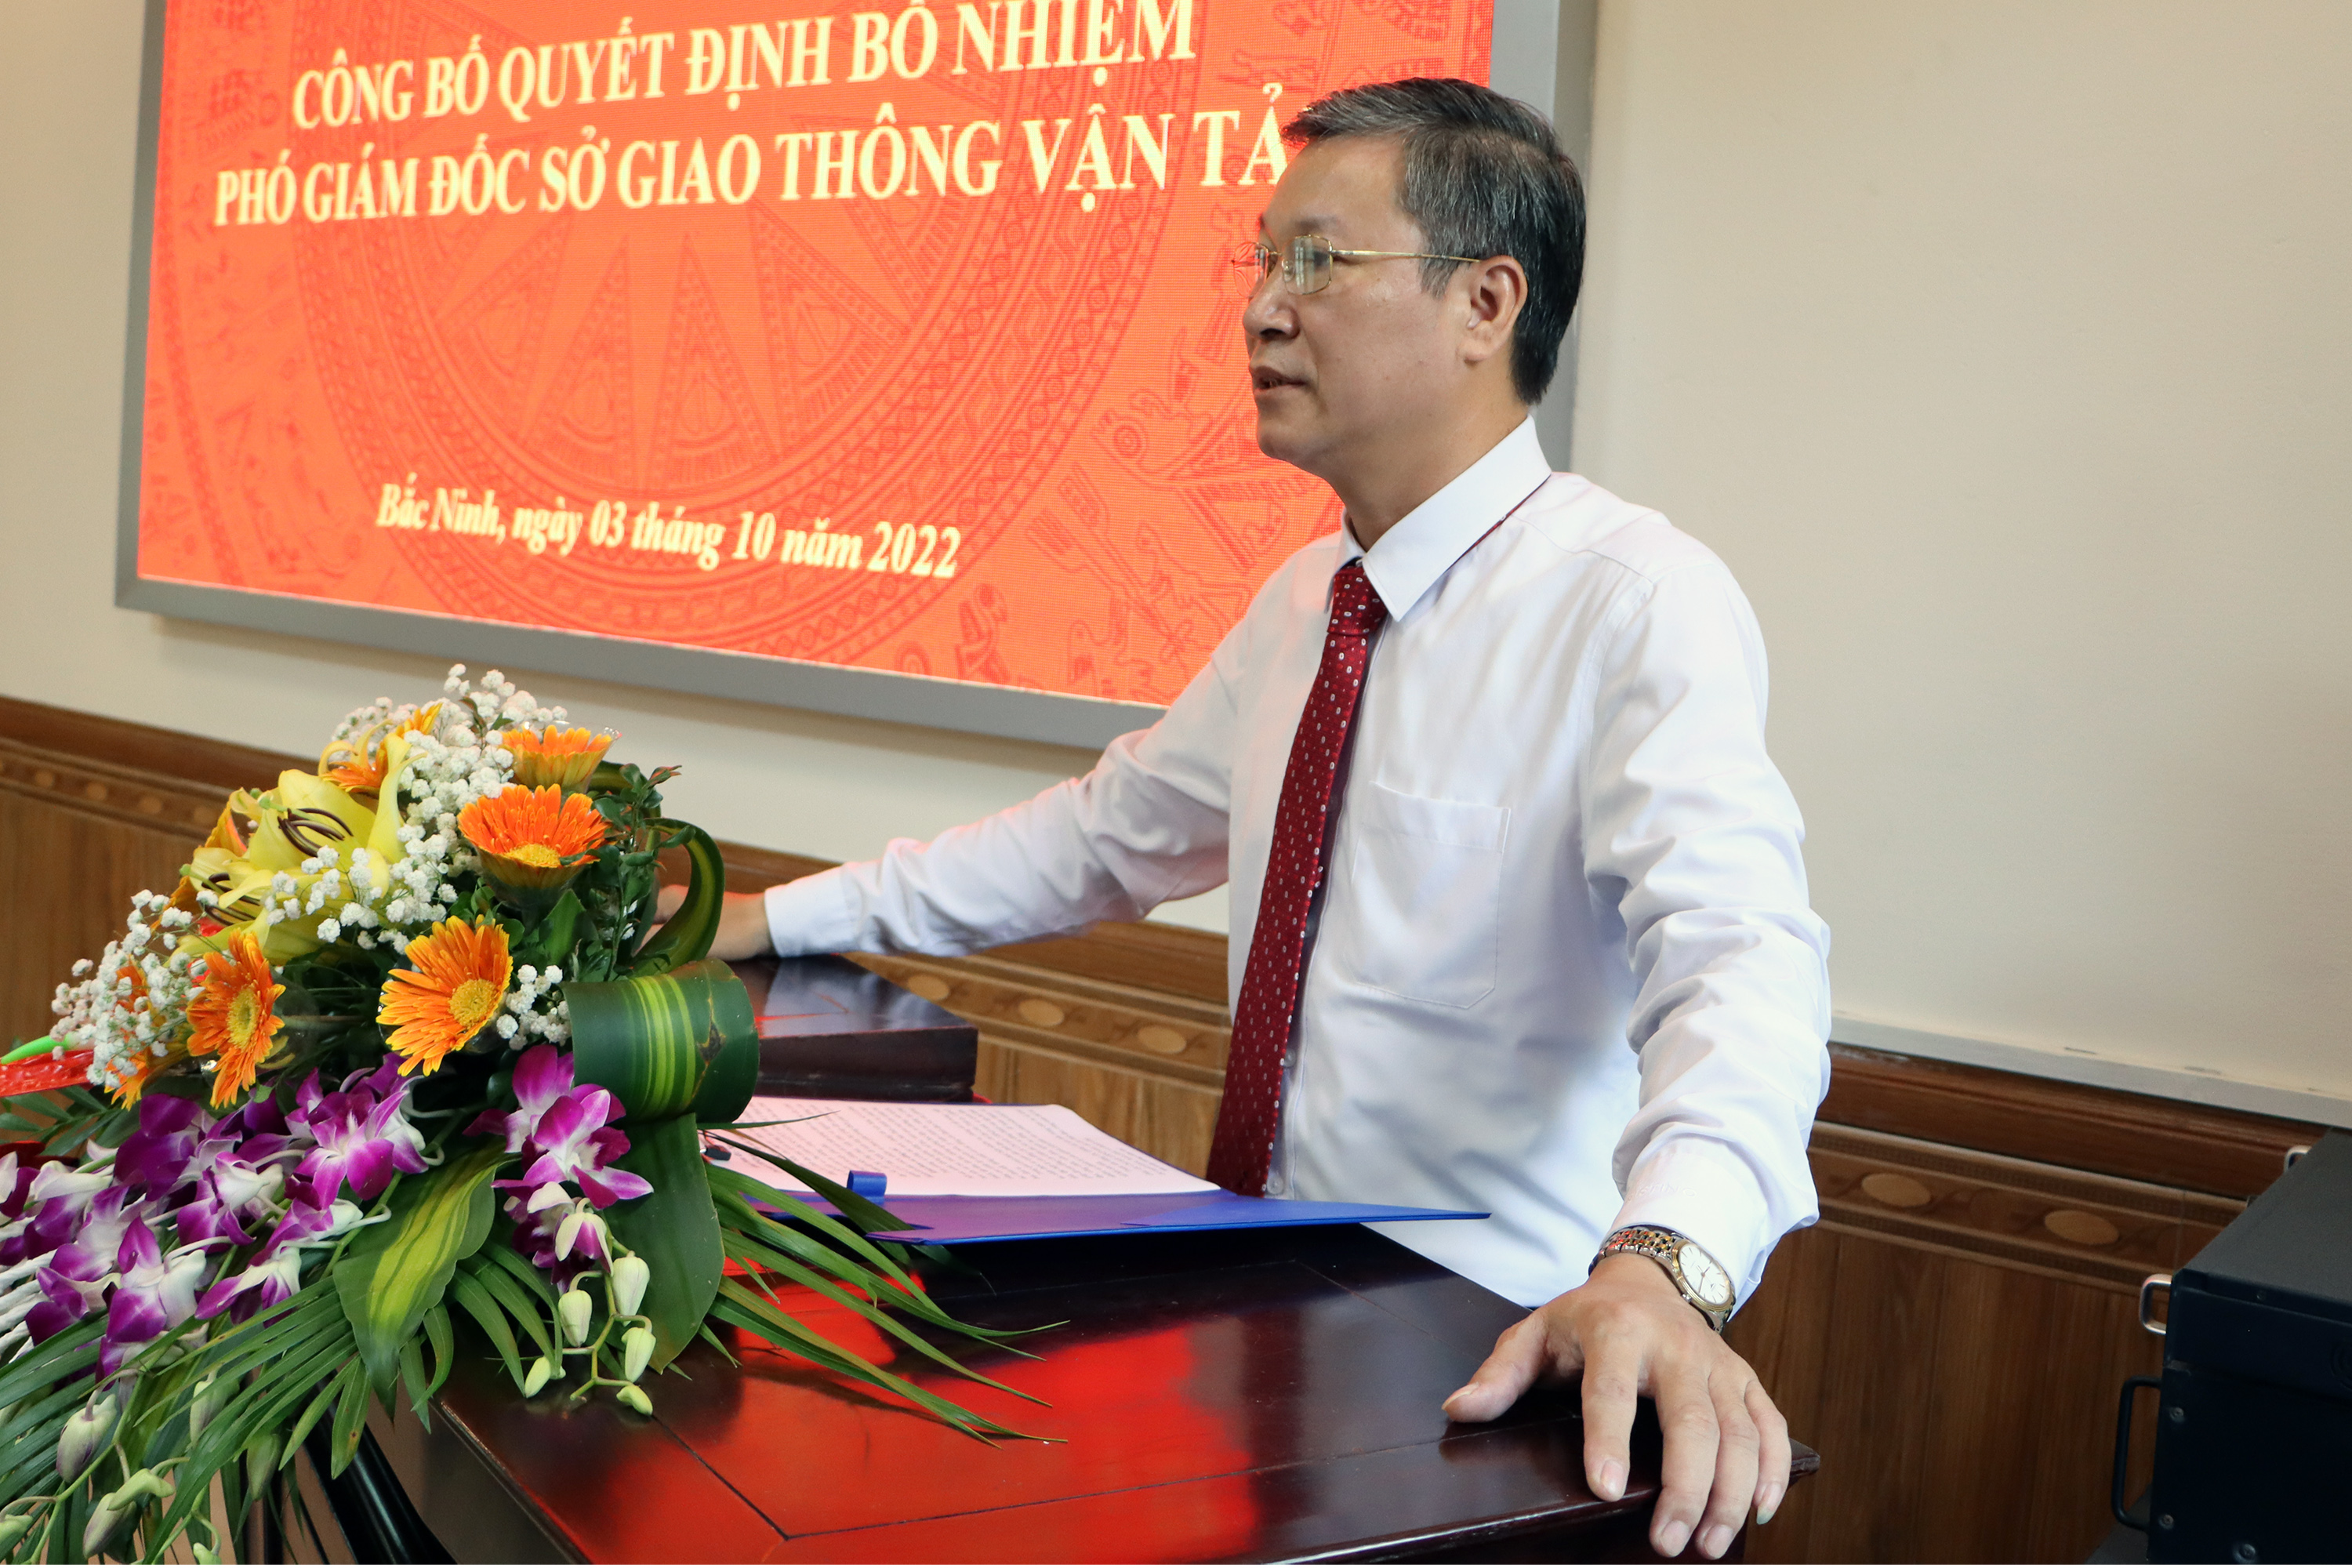 Tân Phó Giám đốc Sở Giao thông vận tải tỉnh Bắc Ninh Ngô Đức Thành phát biểu nhận nhiệm vụ.